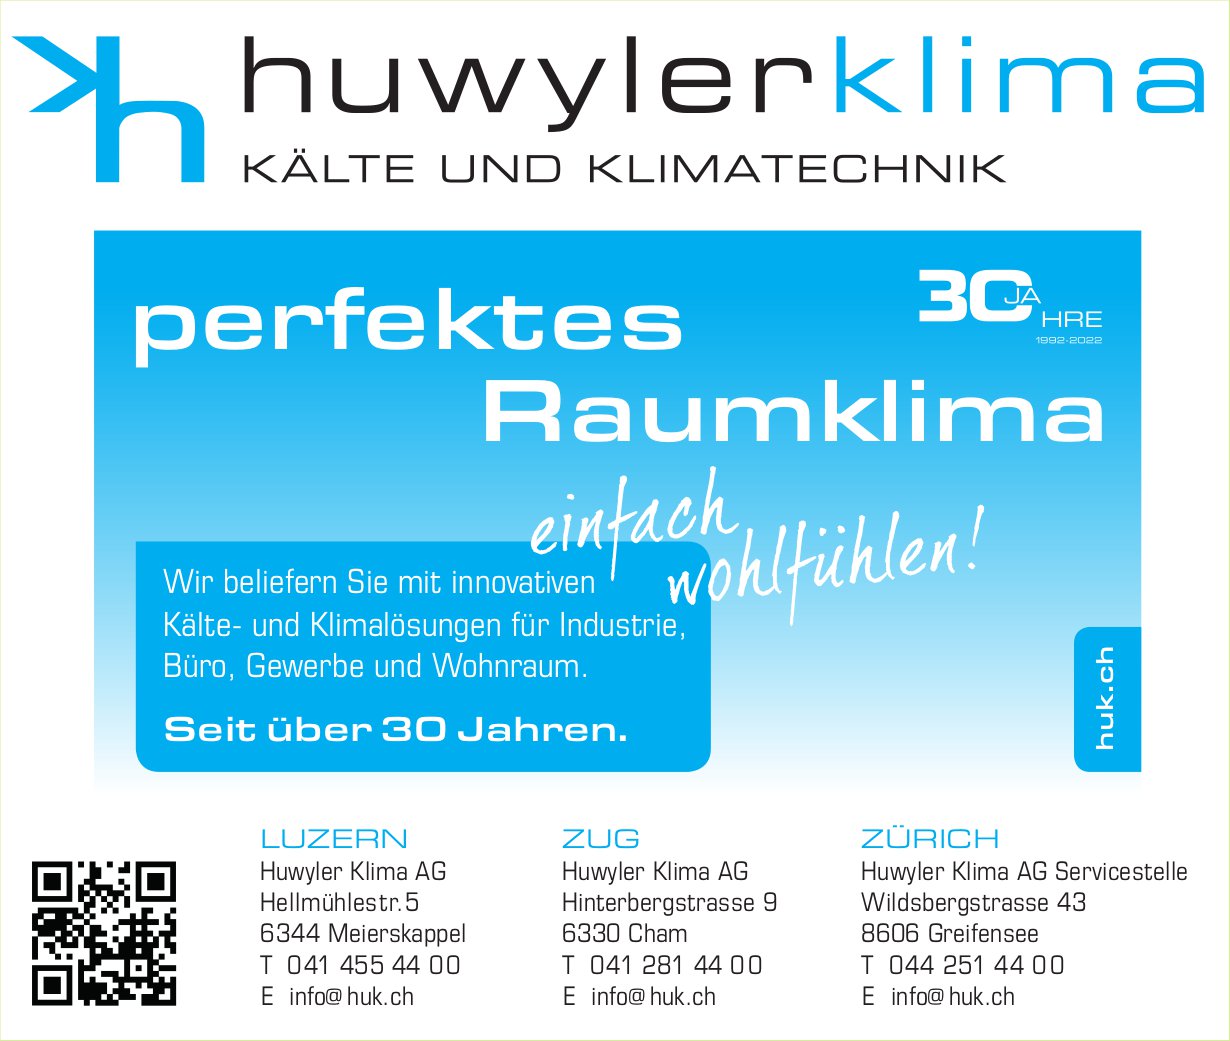 Huwyler Klima AG, Meierskappel - Kälte und Klimatechnik